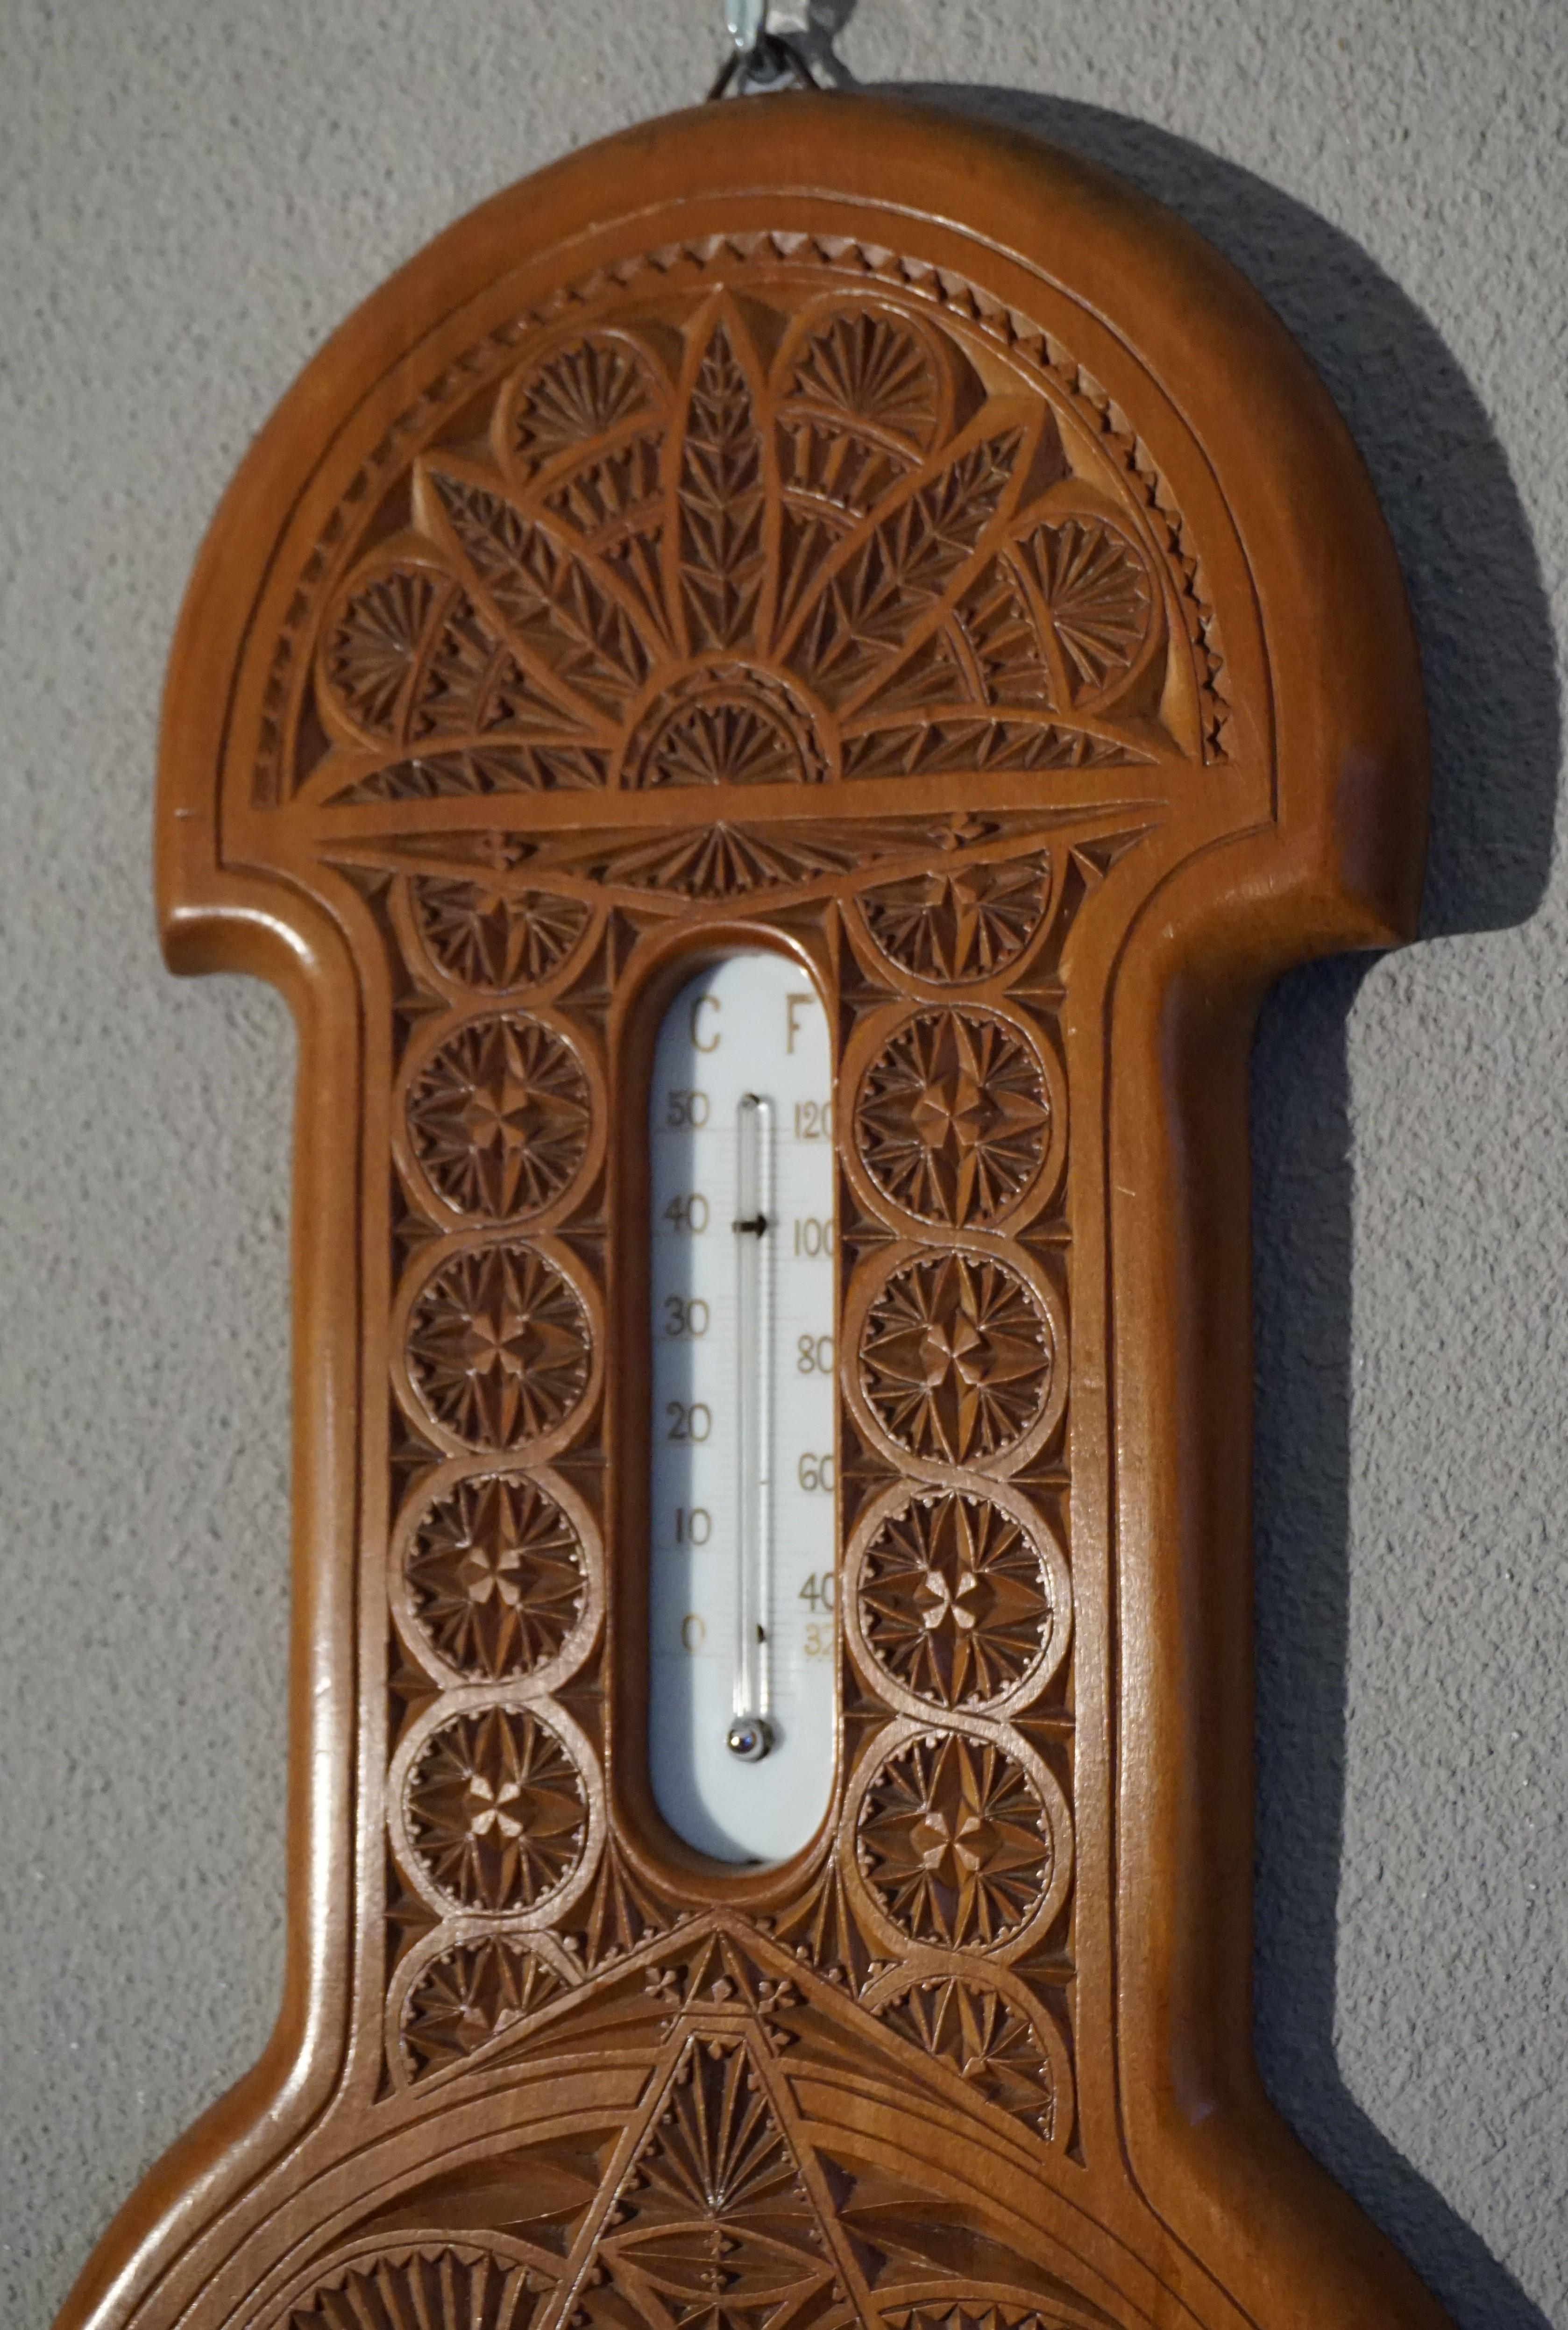 Gut dimensioniertes, sehr dekoratives und hervorragend erhaltenes Arts & Crafts Barometer.

Dieses einzigartige Banjo-Barometer aus der Zeit des Arts & Crafts ist ein weiteres großartiges Beispiel für die Schönheit und die Qualität der